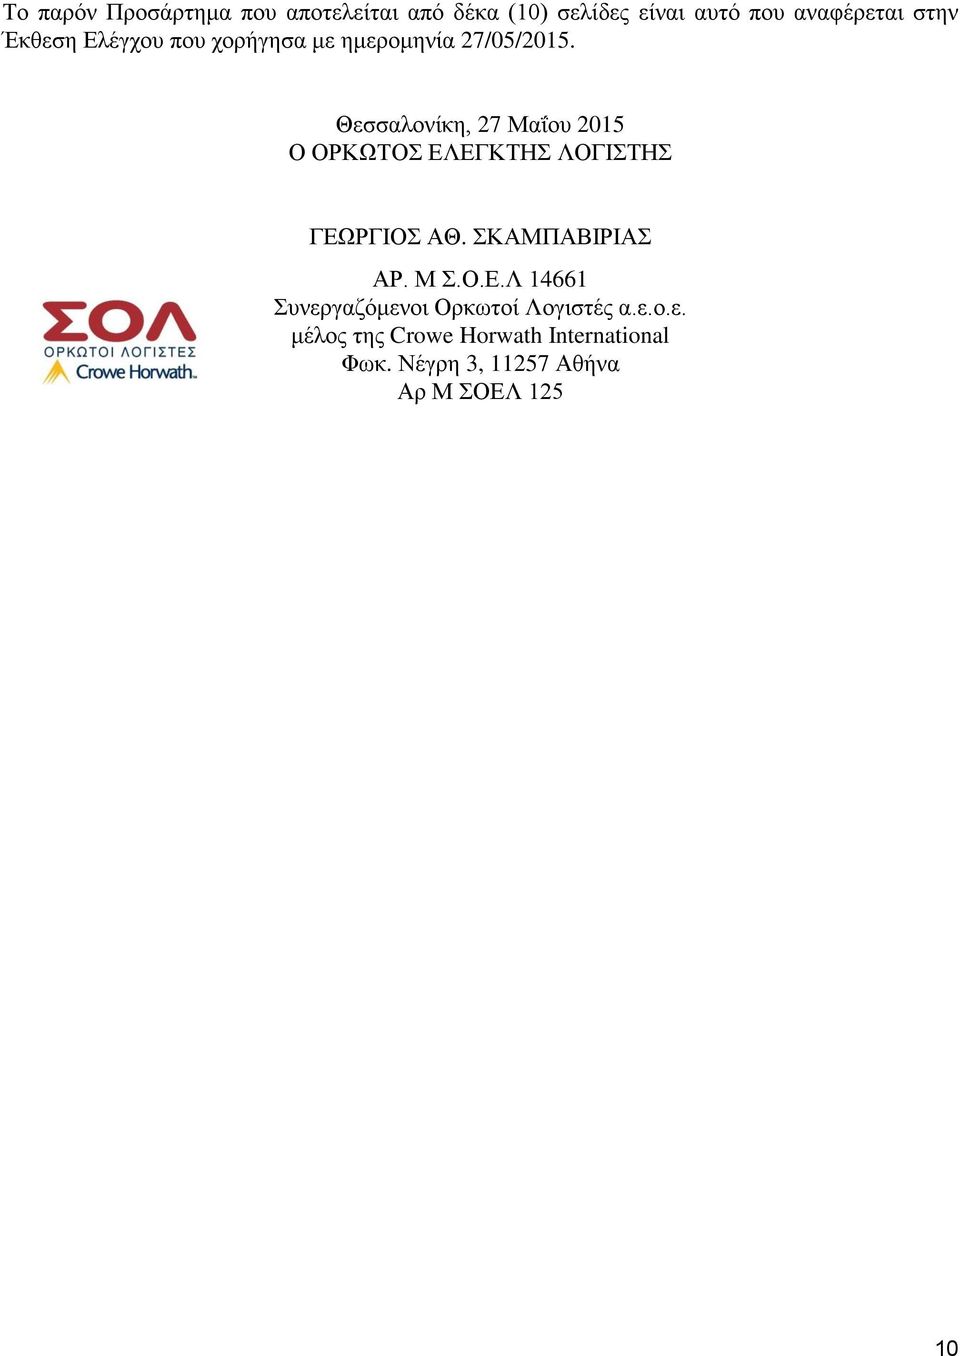 Θεσσαλονίκη, 27 Μαΐου 2015 Ο ΟΡΚΩΤΟΣ ΕΛΕΓΚΤΗΣ ΛΟΓΙΣΤΗΣ ΓΕΩΡΓΙΟΣ ΑΘ. ΣΚΑΜΠΑΒΙΡΙΑΣ ΑΡ. Μ Σ.Ο.Ε.Λ 14661 Συνεργαζόμενοι Ορκωτοί Λογιστές α.